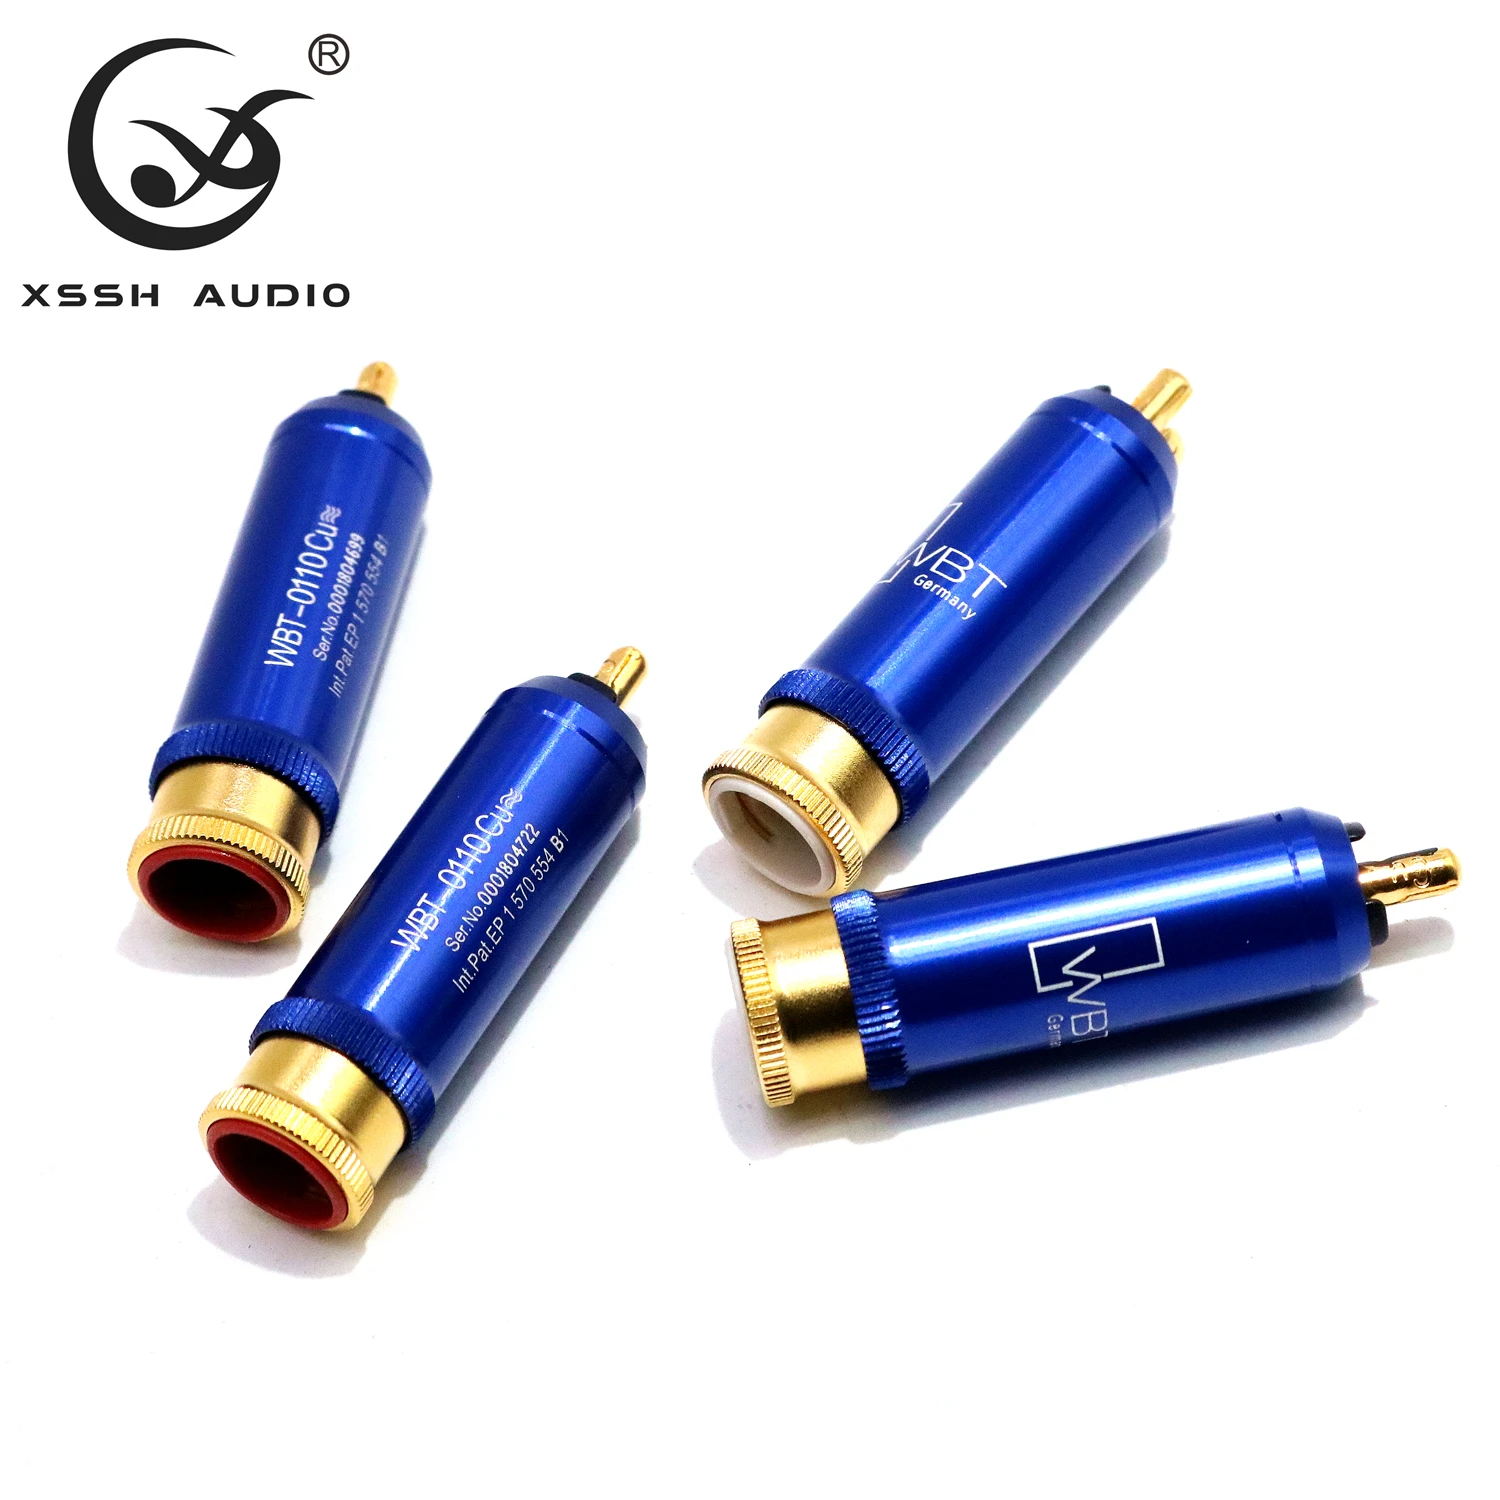 XSSH аудио 8 шт. WBT-0110Cu nextgen signature RCA 2 комплекта из 8 штук медь высокого класса разъем штекер